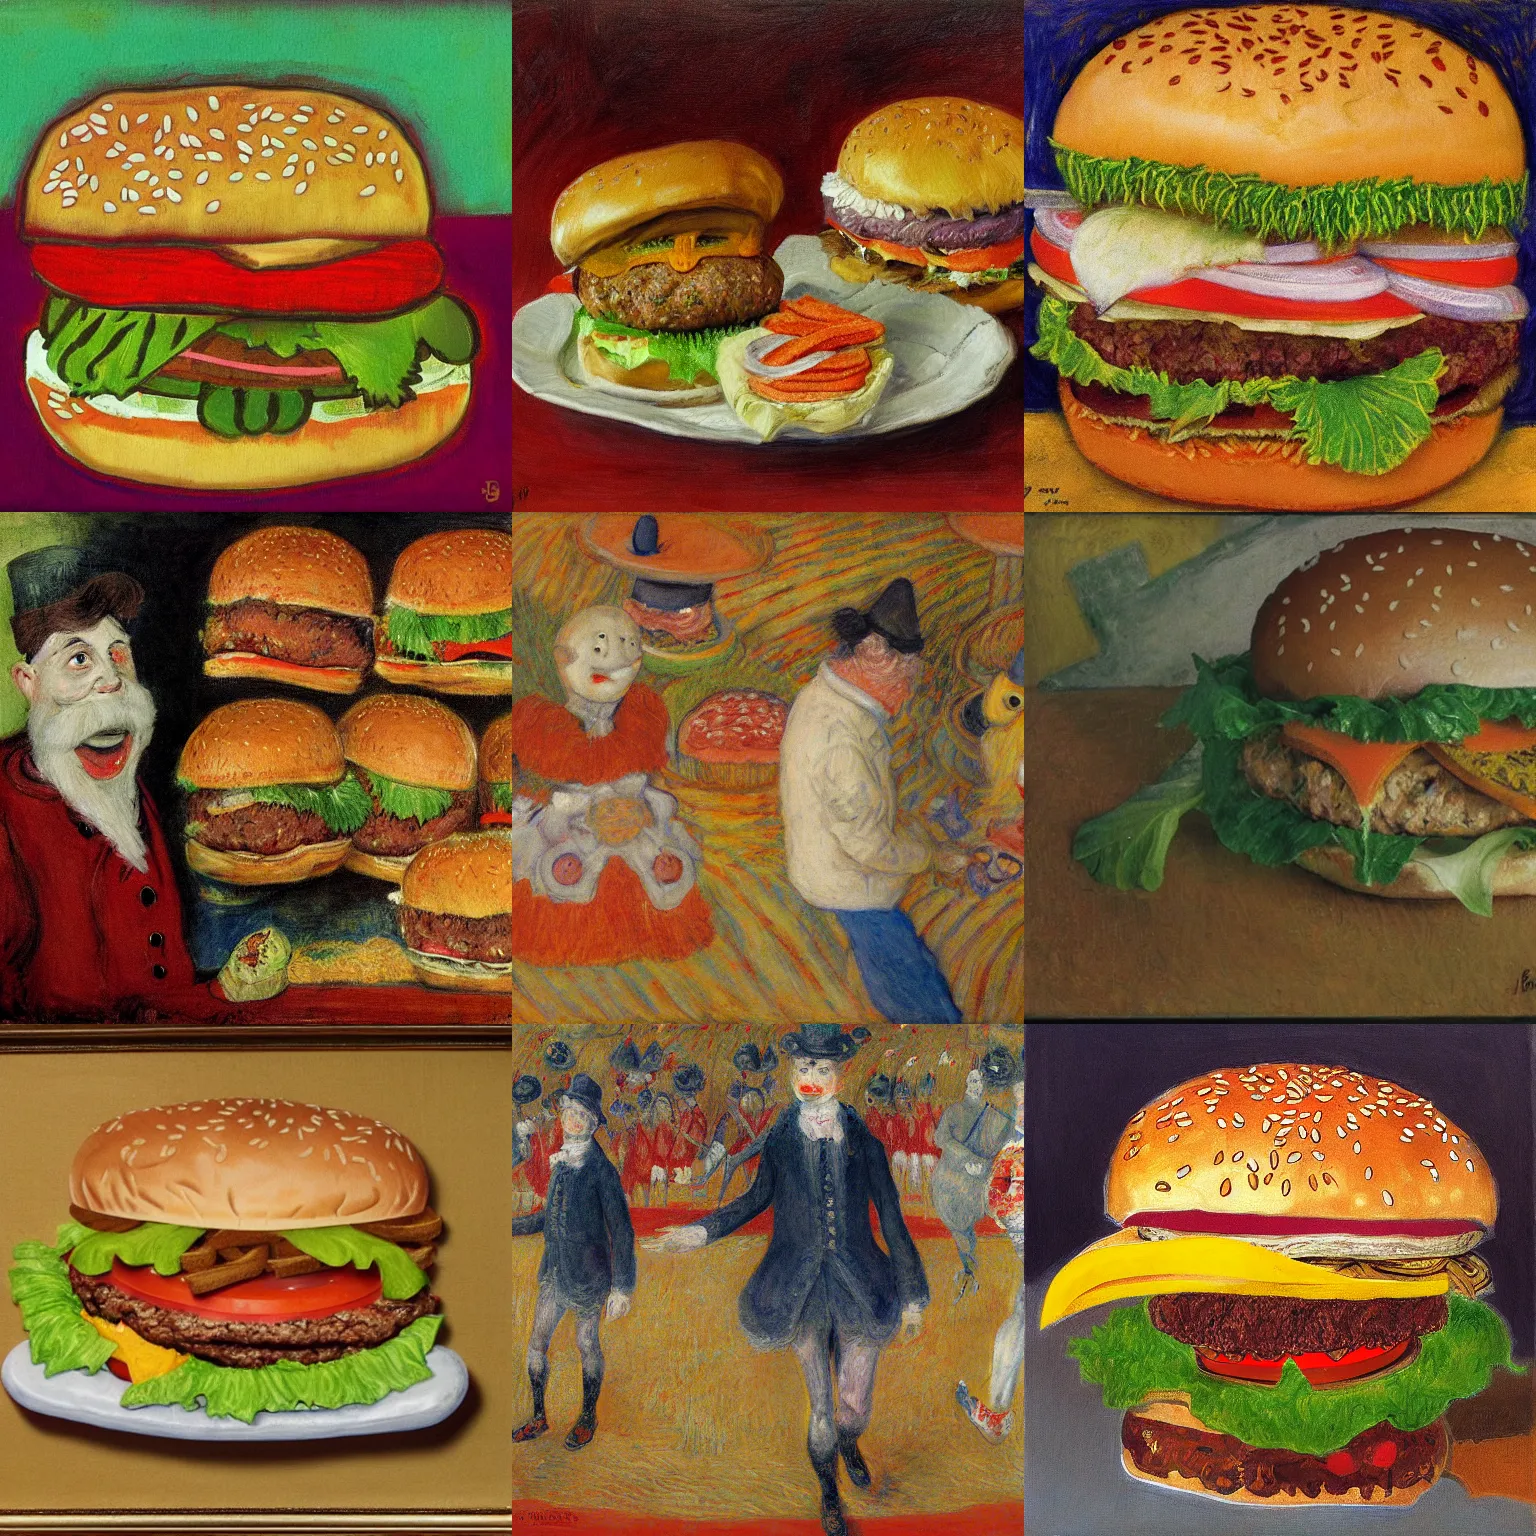 Prompt: burger king foot lettuce, artwork by james ensor